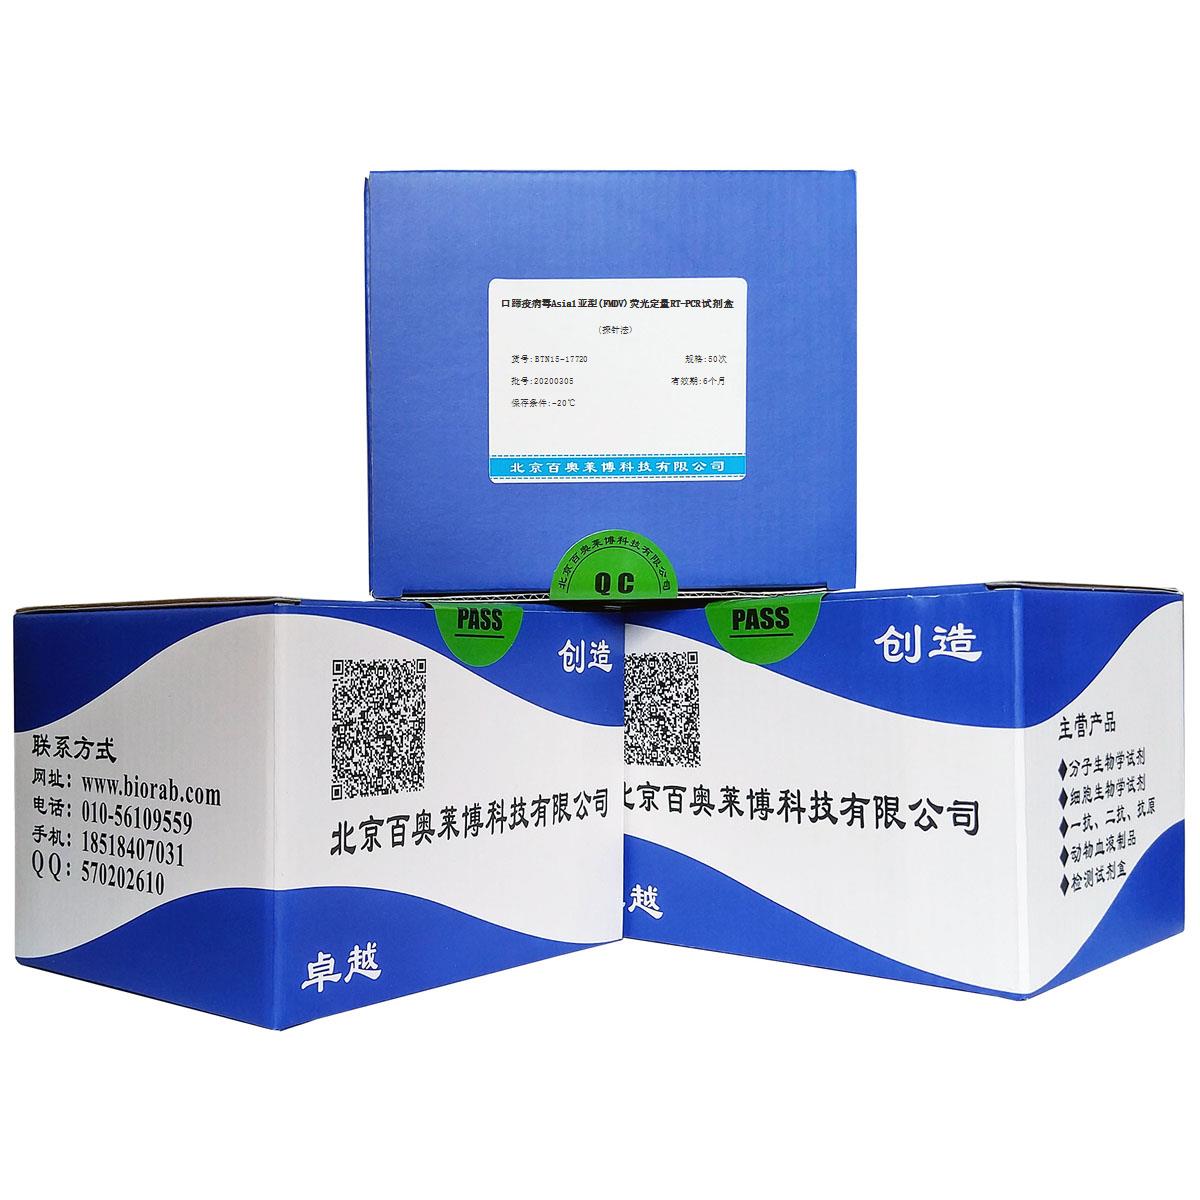 口蹄疫病毒Asia1亚型(FMDV)荧光定量RT-PCR试剂盒(探针法)